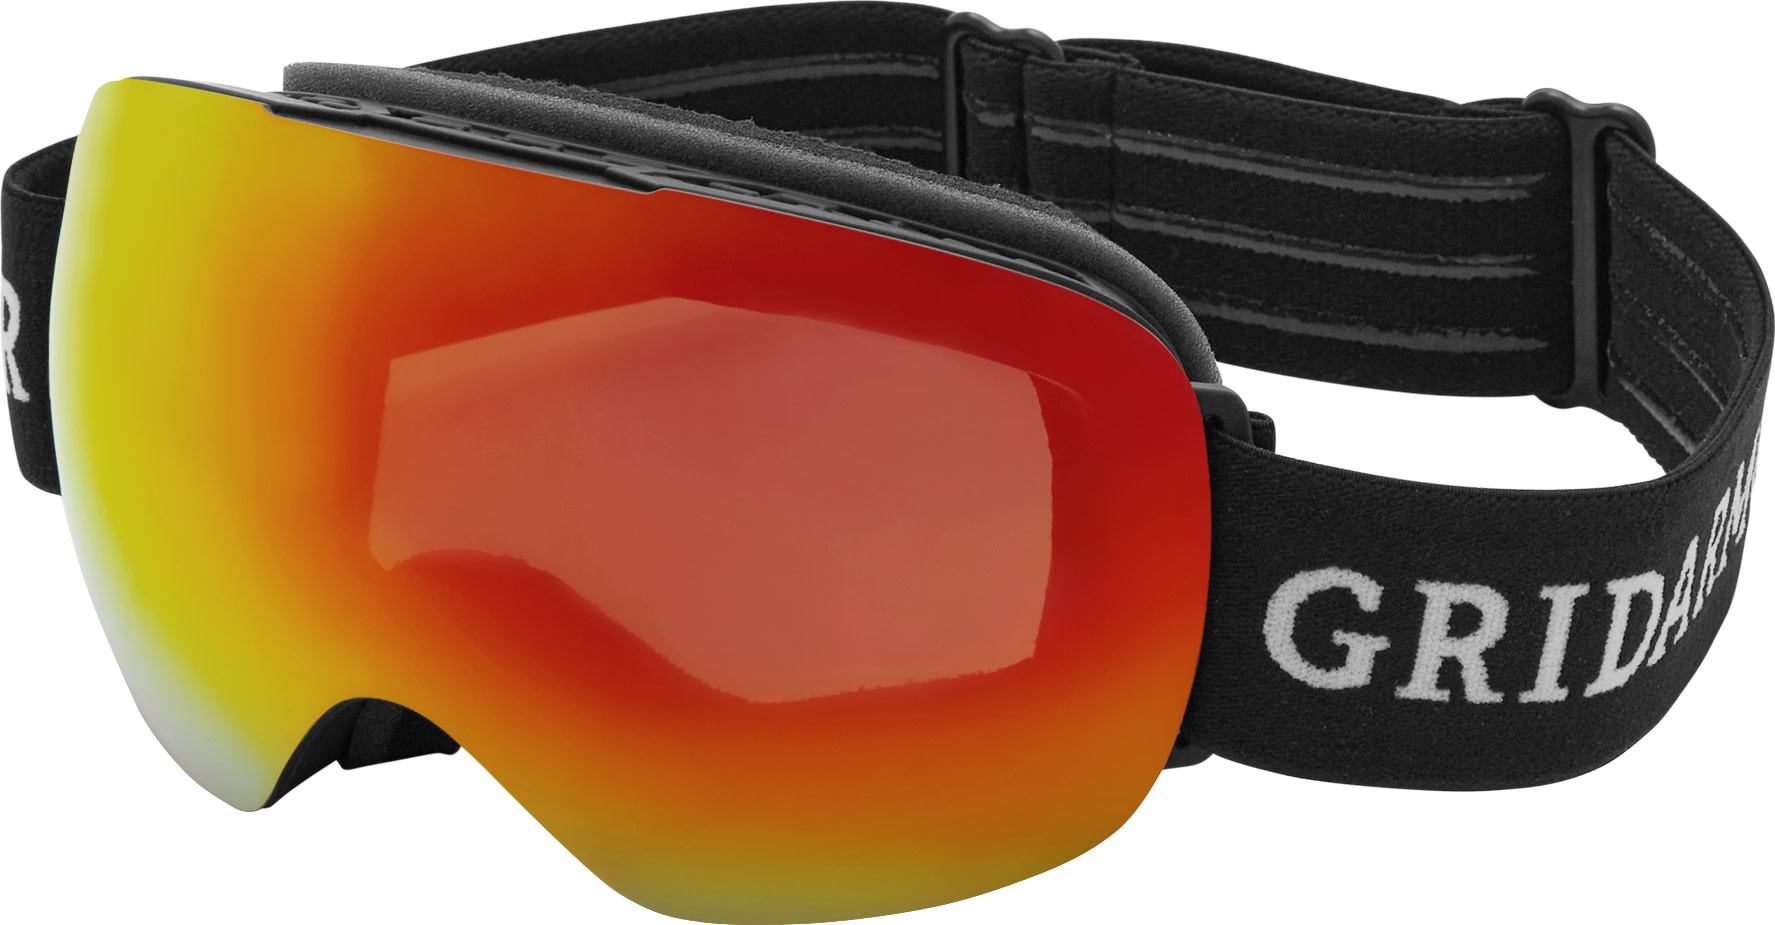 Gridarmor Norefjell Ski Goggles Red